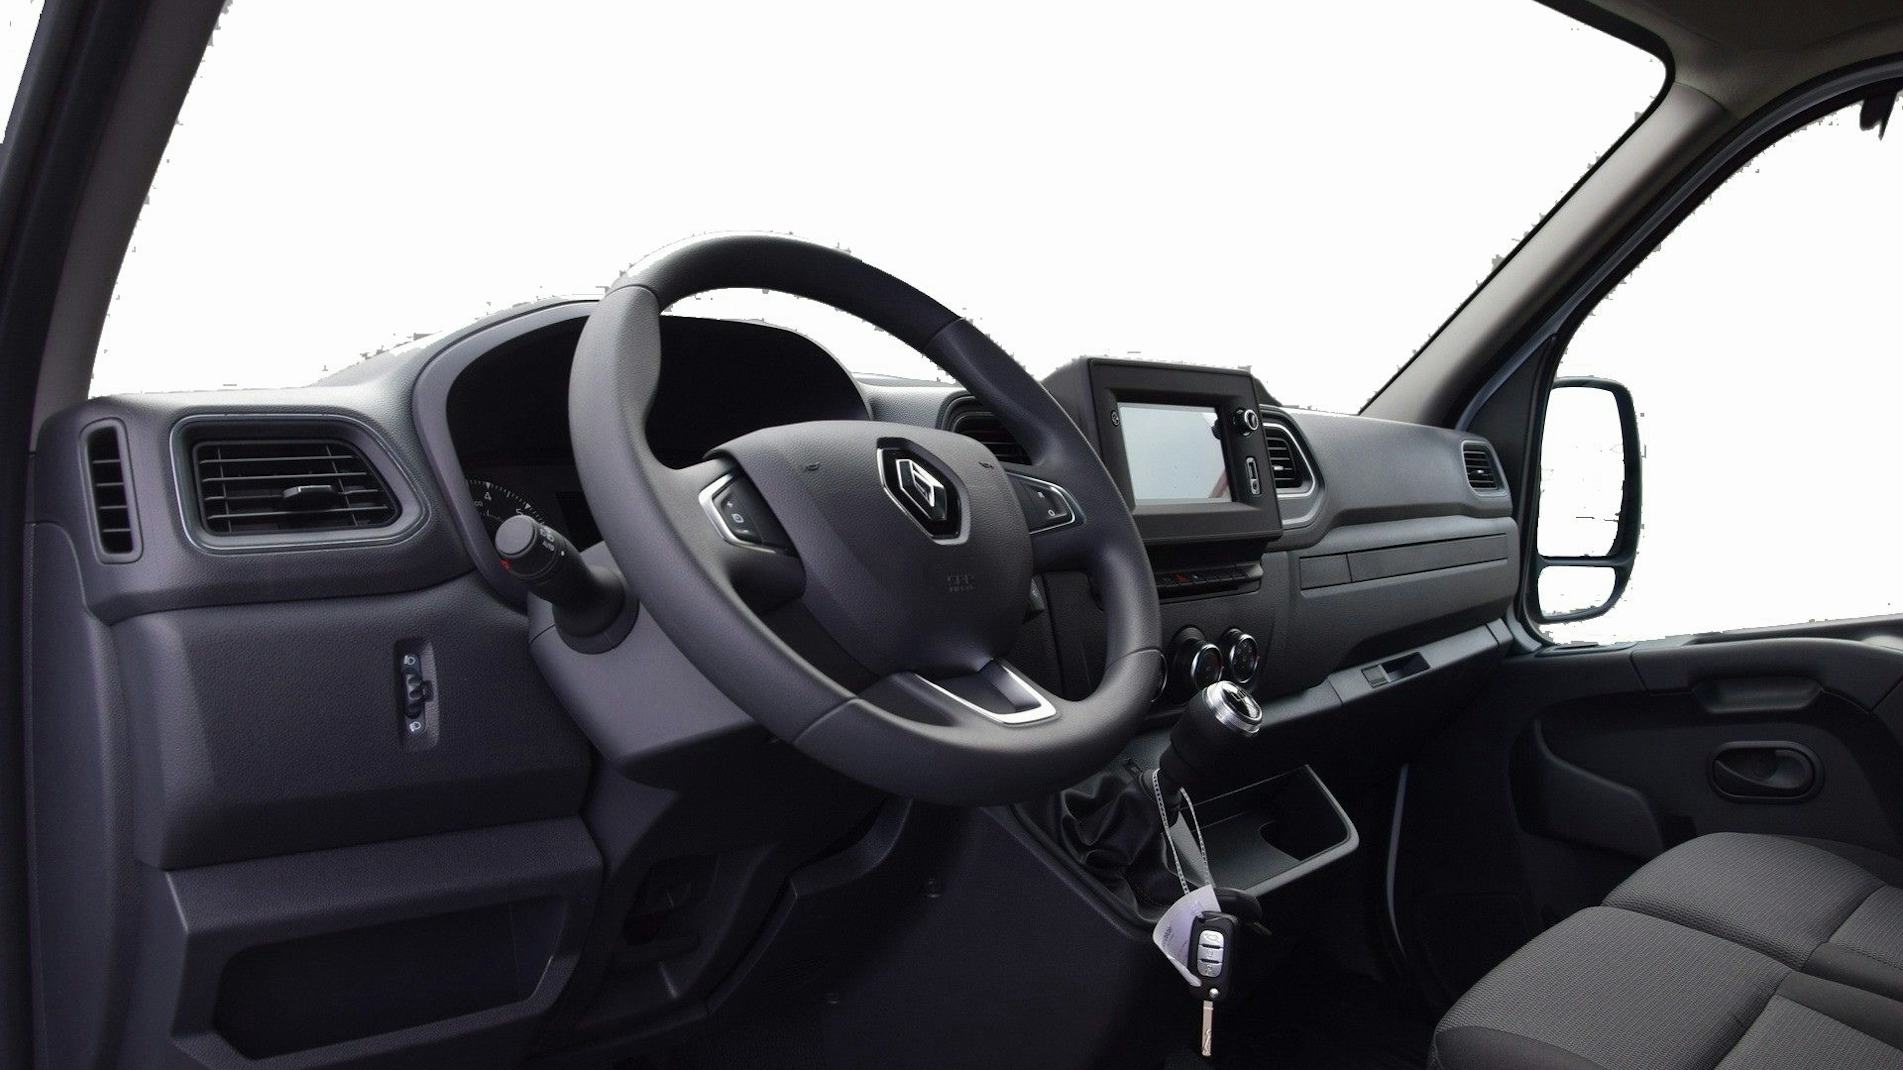 Altus Utilitaires - Renault Master L3H2 Grand Confort